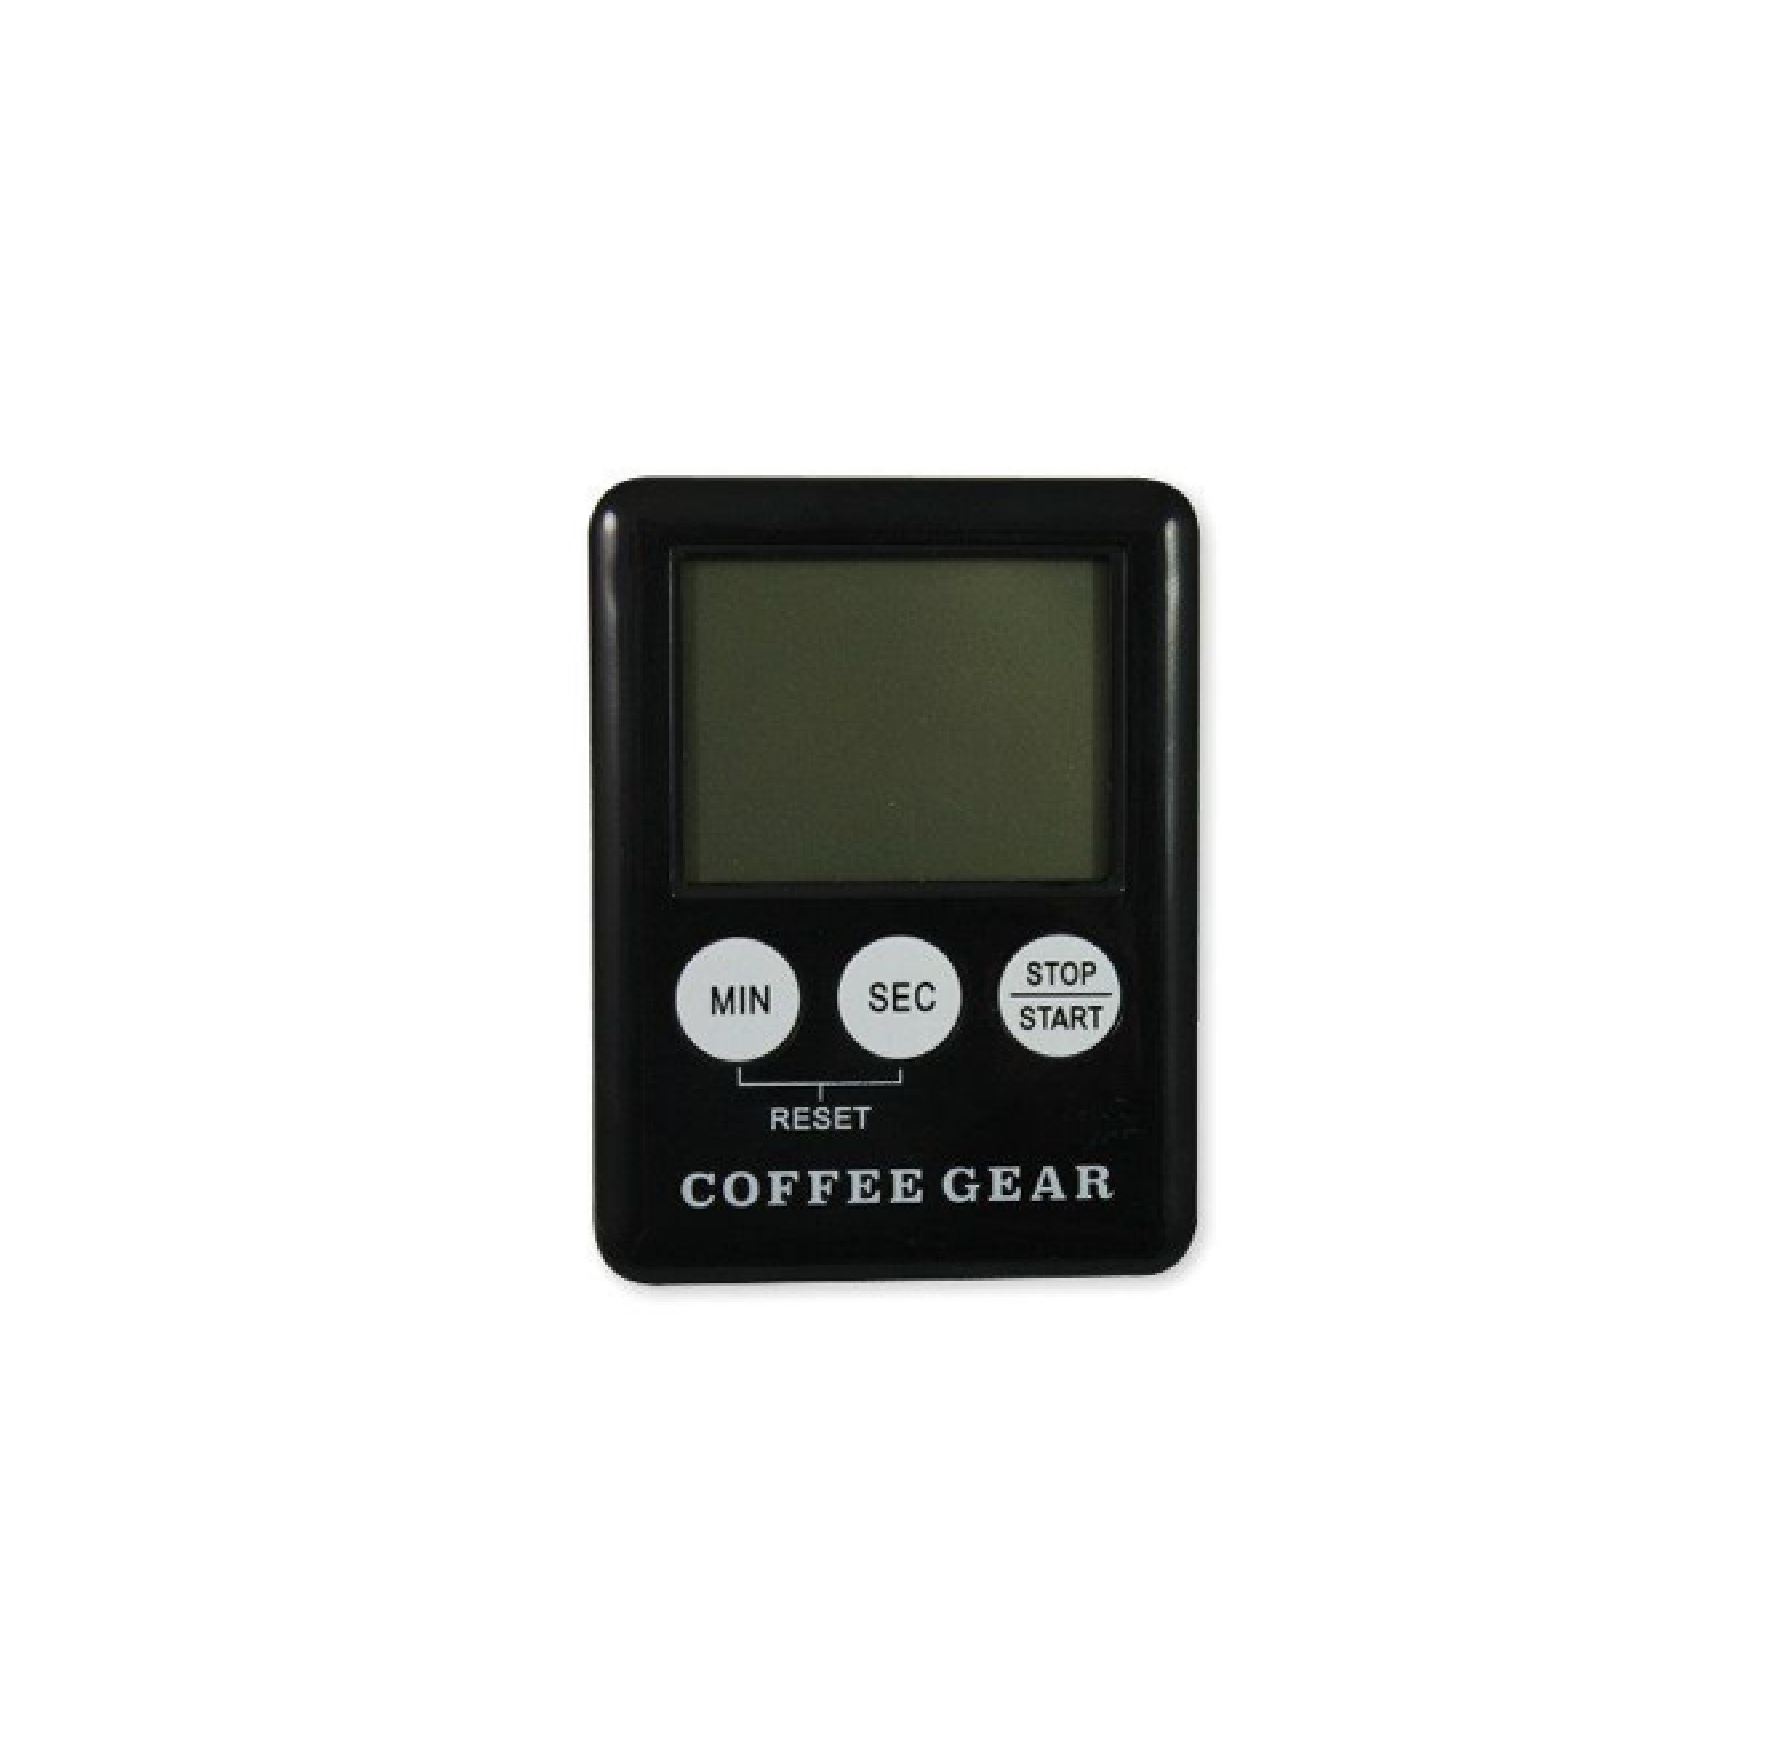 Coffee Gear Timer